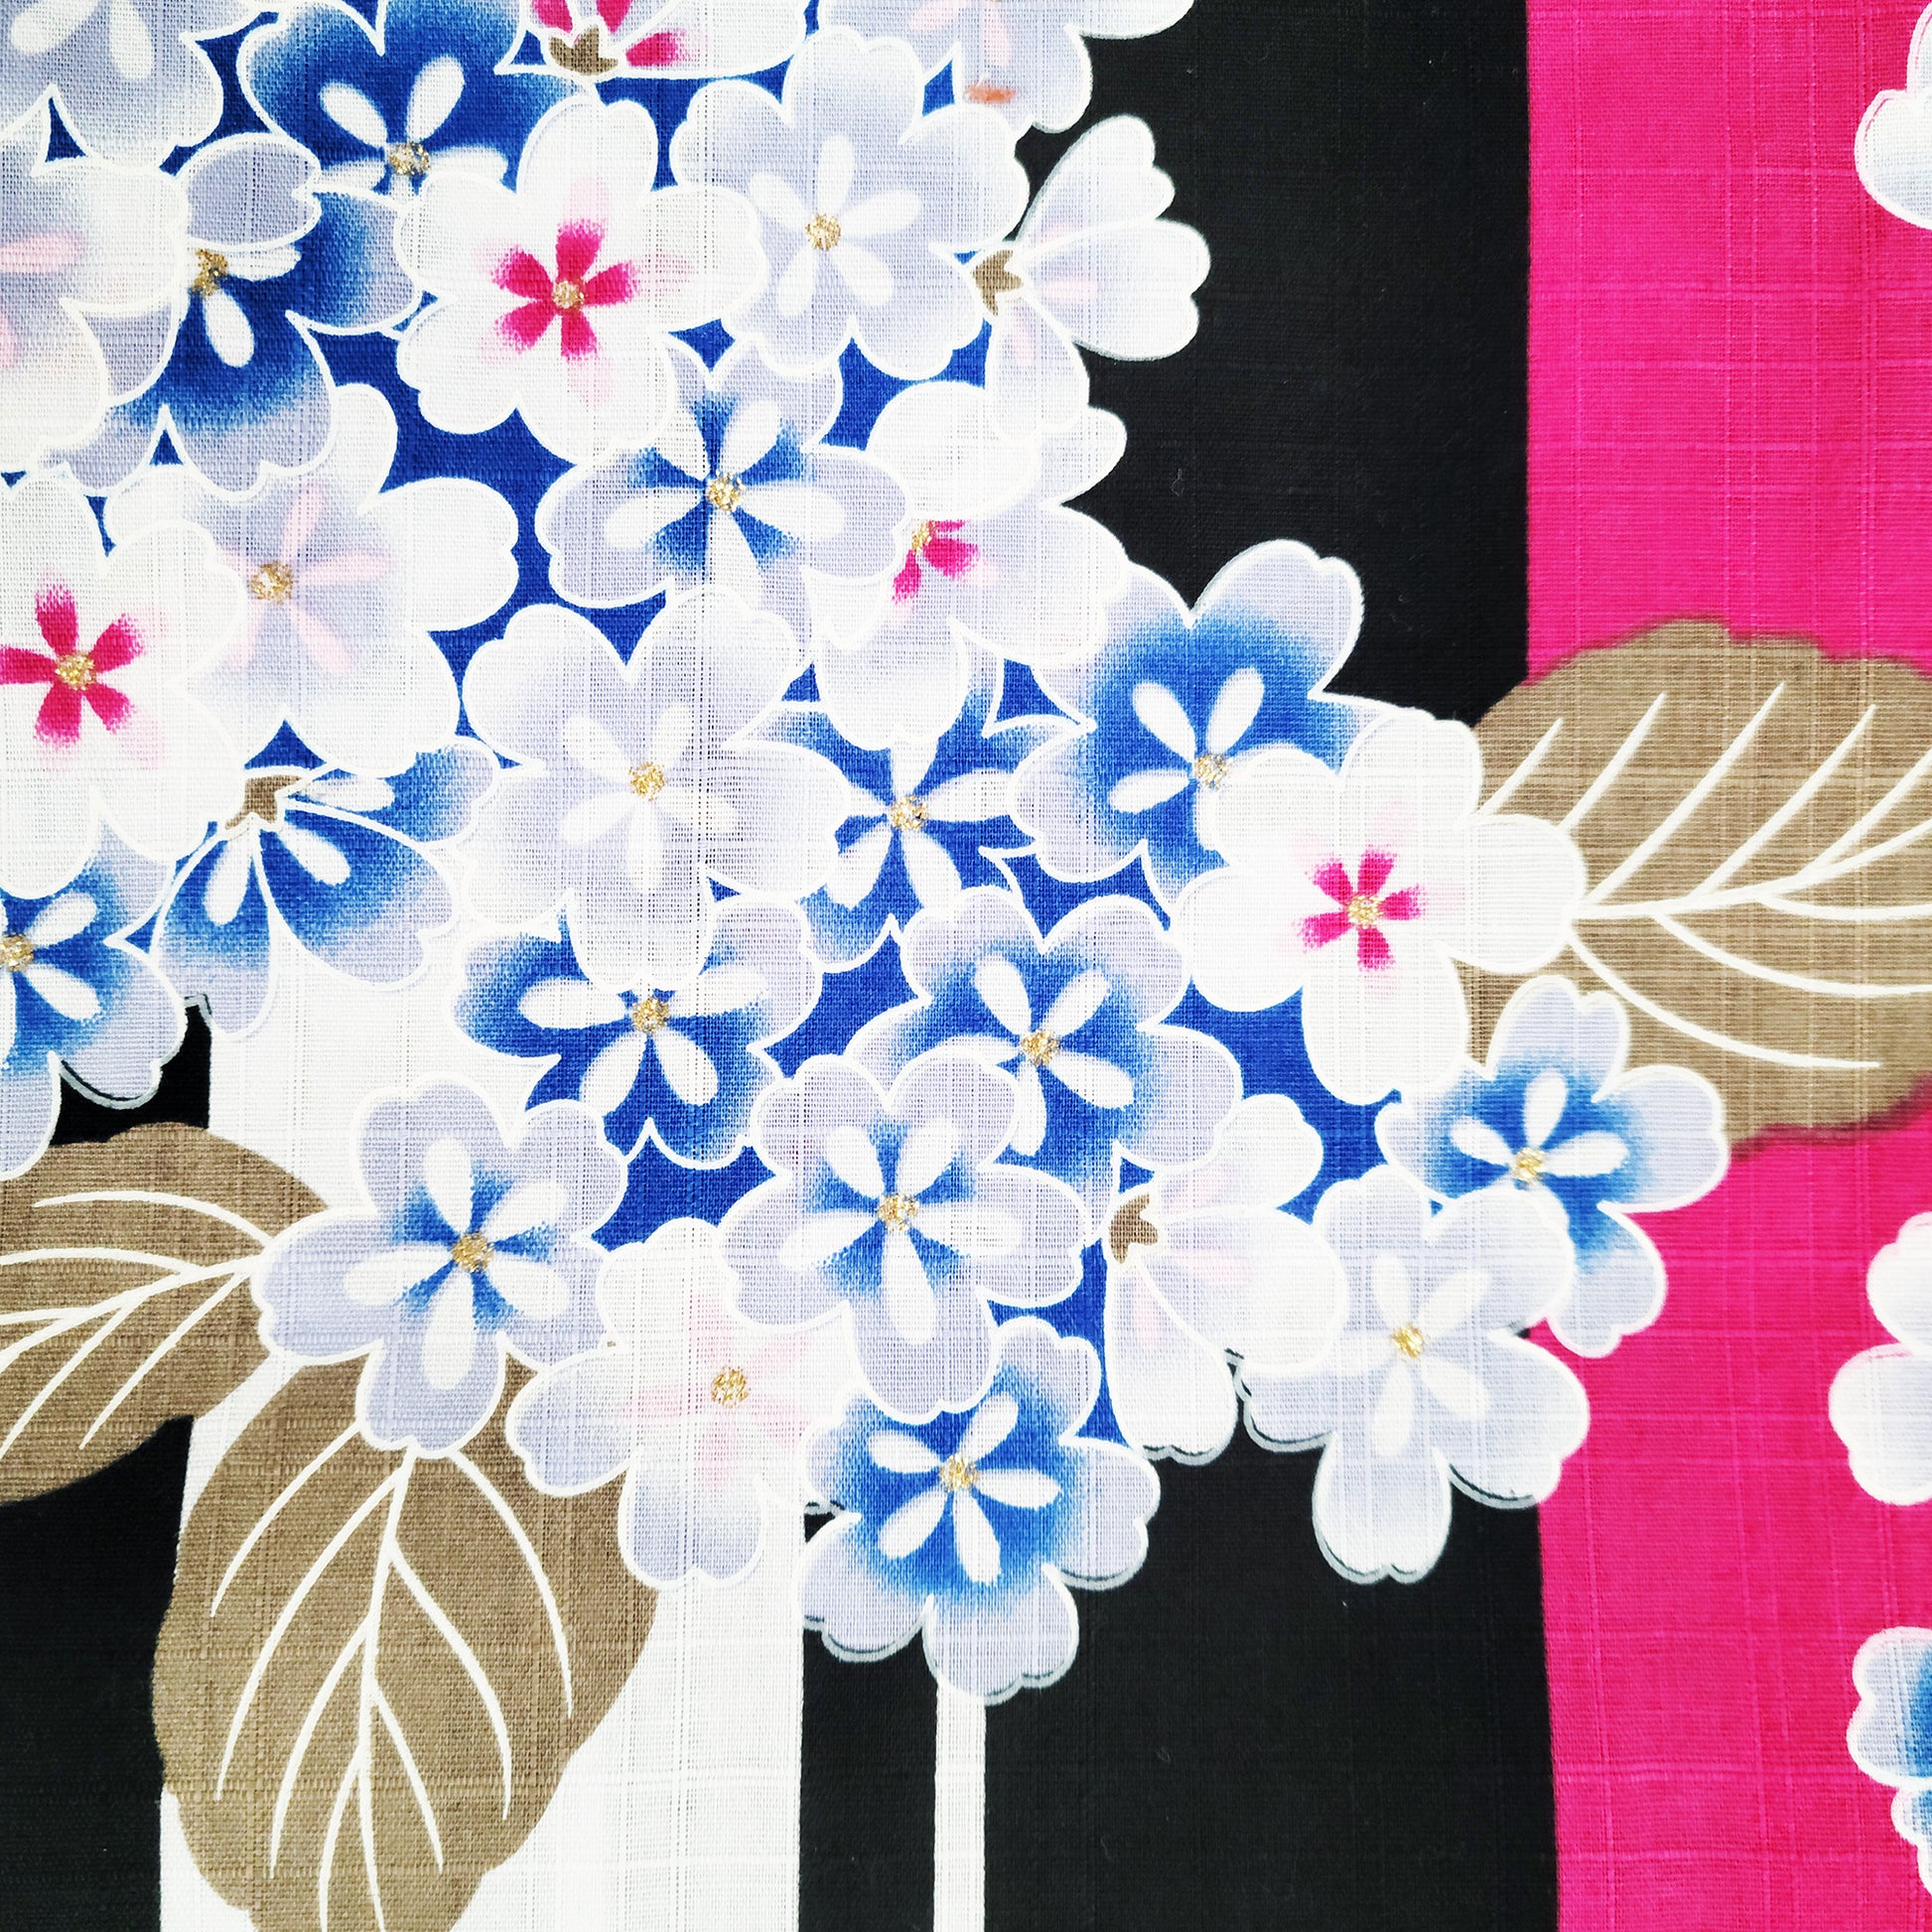 Women's Japanese Traditional Yukata Kimono Petite Size - Hydrangea in Pink, Black, and White Stripes